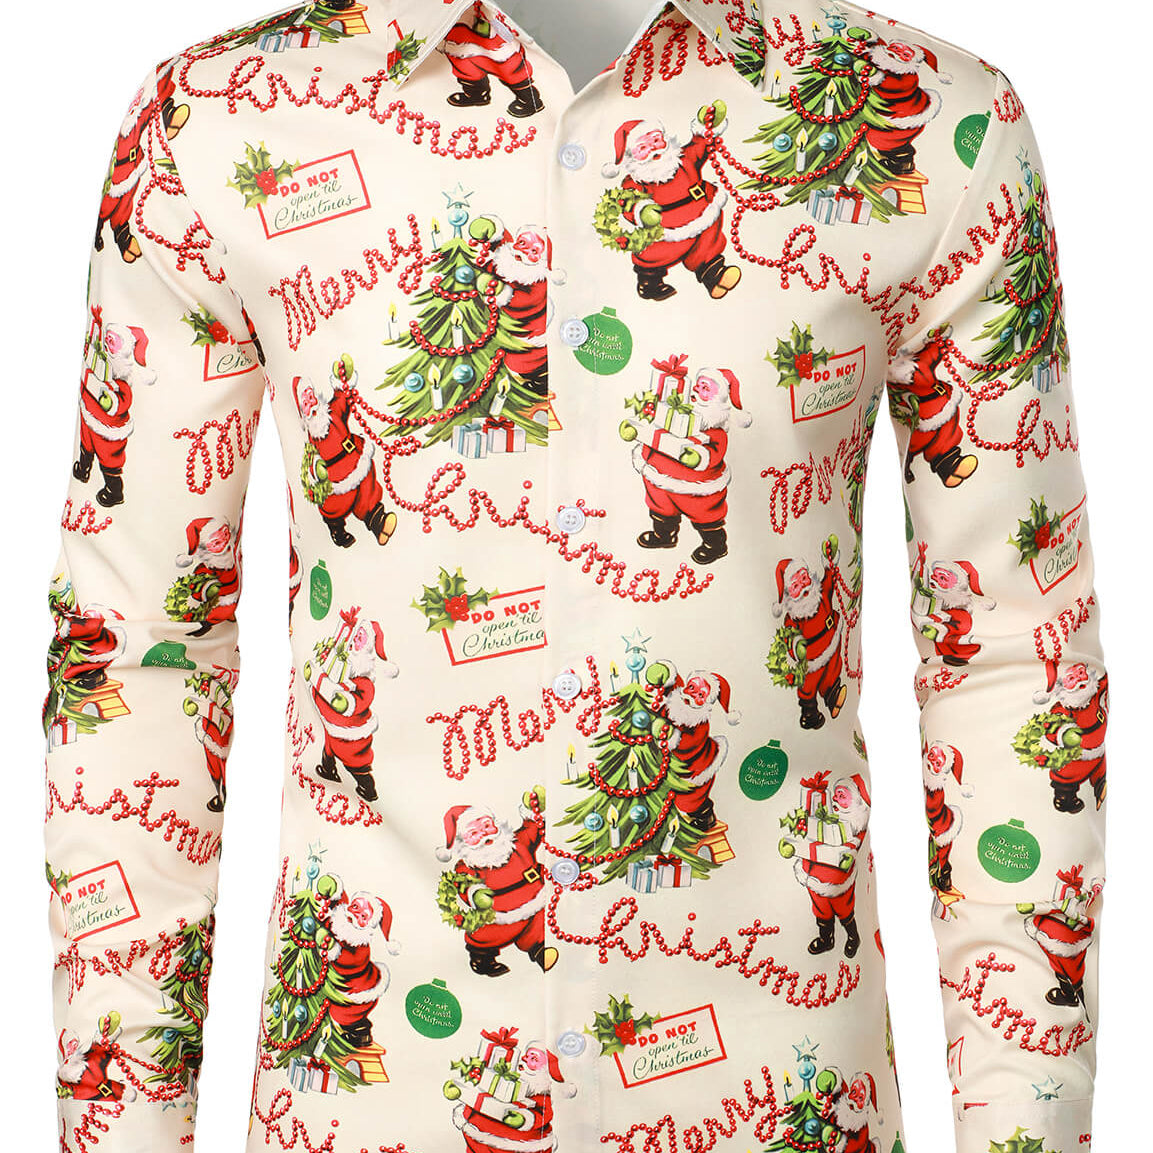 Camisa de manga larga con botones vintage de Papá Noel lindo feliz Navidad para hombre